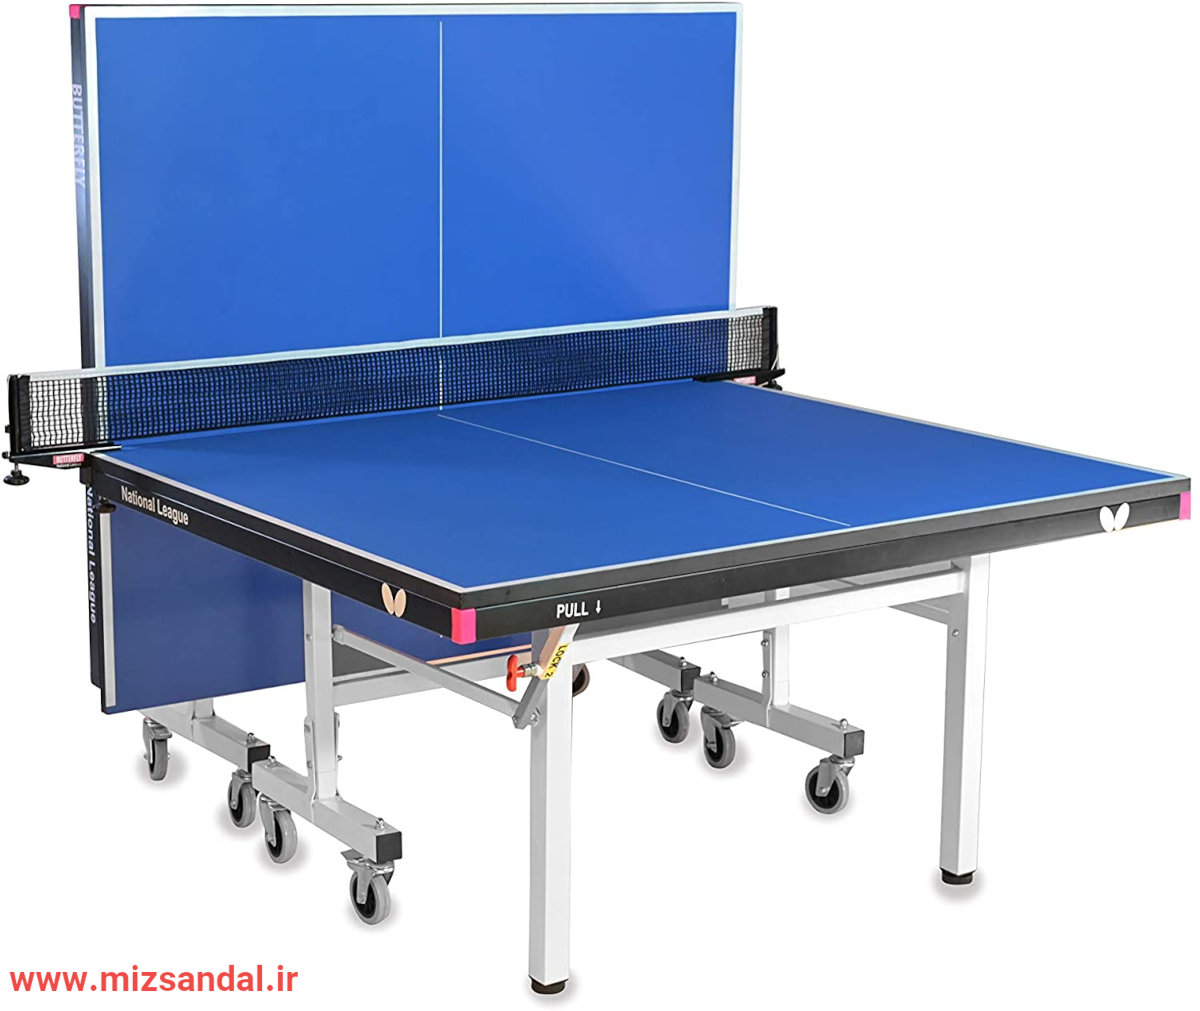 ابعاد استاندارد میز تنیس-اندازه میز تنیس-اندازه میز تنیس استاندارد-ارتفاع میز تنیس استاندارد-ابعاد میز پینگ پنگ